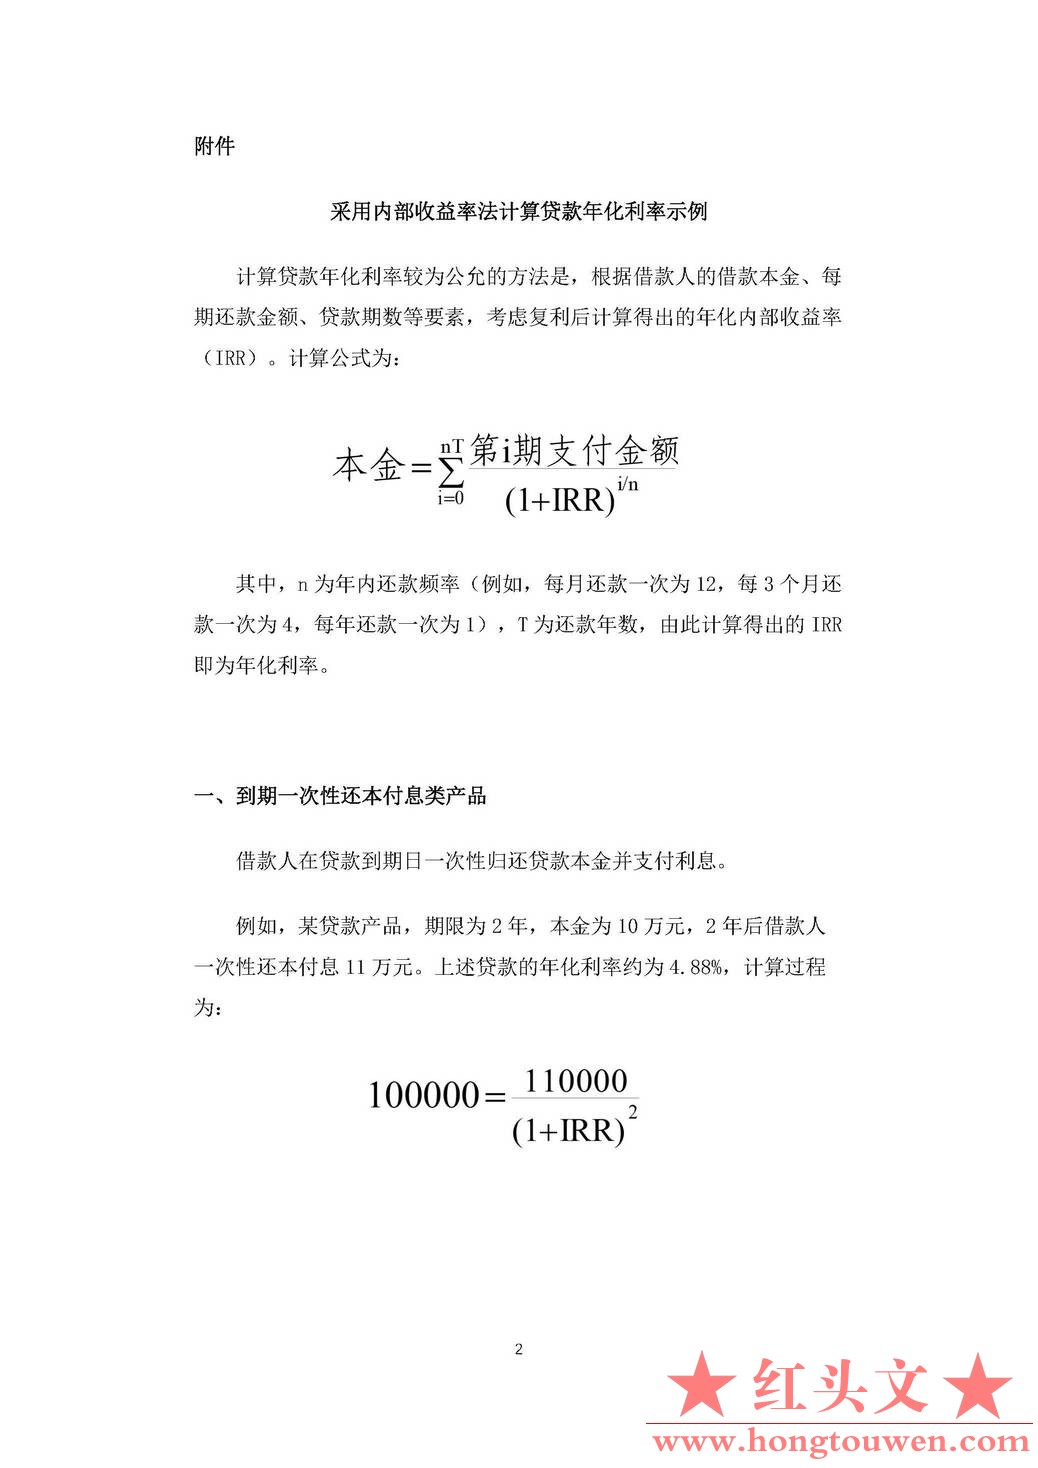 中国人民银行公告[2021]第3号-明示贷款年化利率_页面_2.jpg